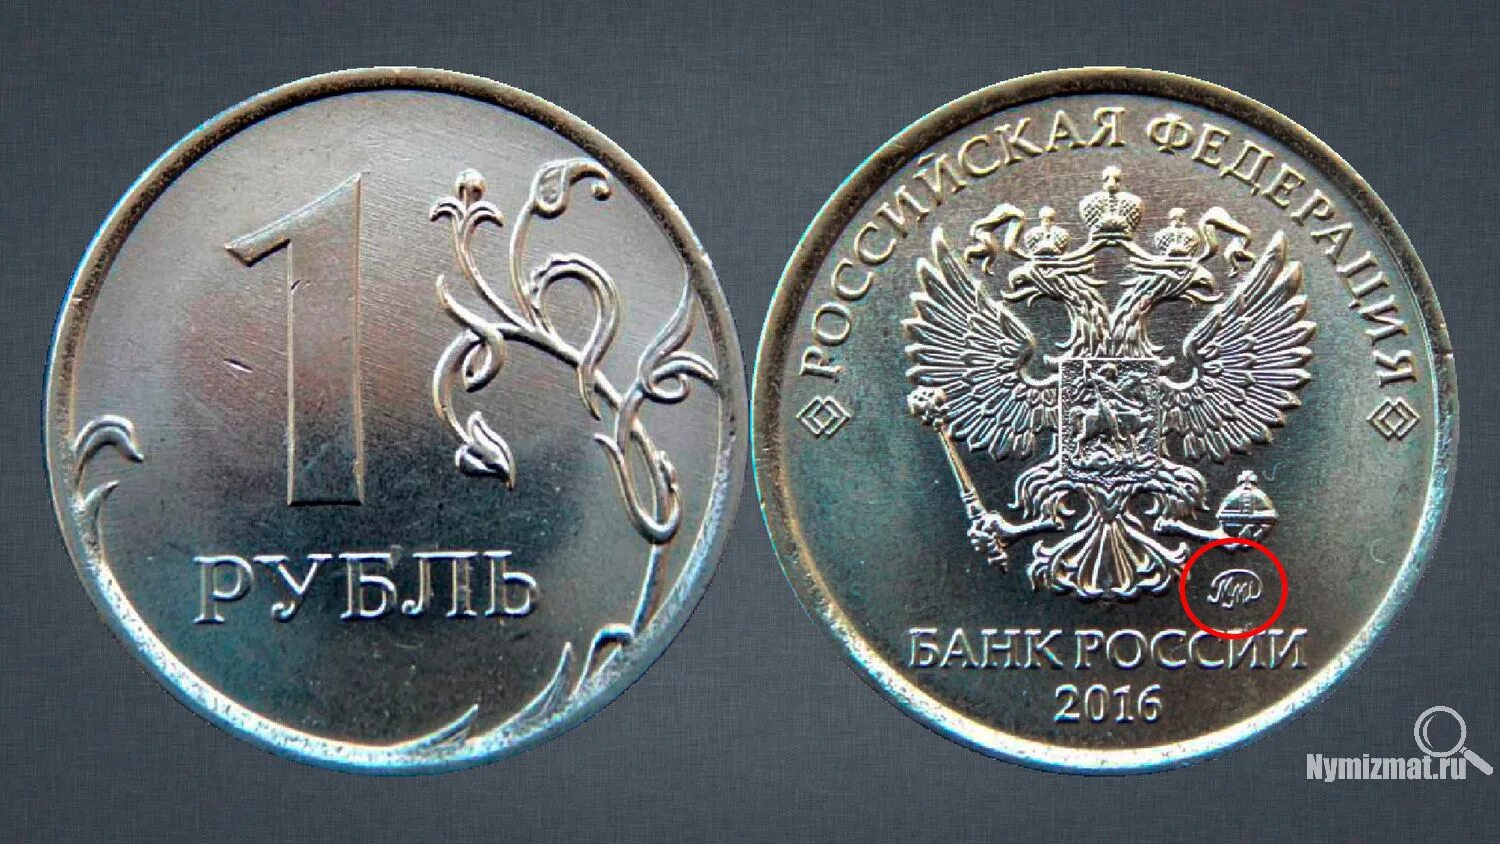 1 Рубль 2016 года СПМД. Монета 1 рубль 2016 года СПМД. 10 Рублей 2016 СПМД. 1 Рубль 2016 года ММД.